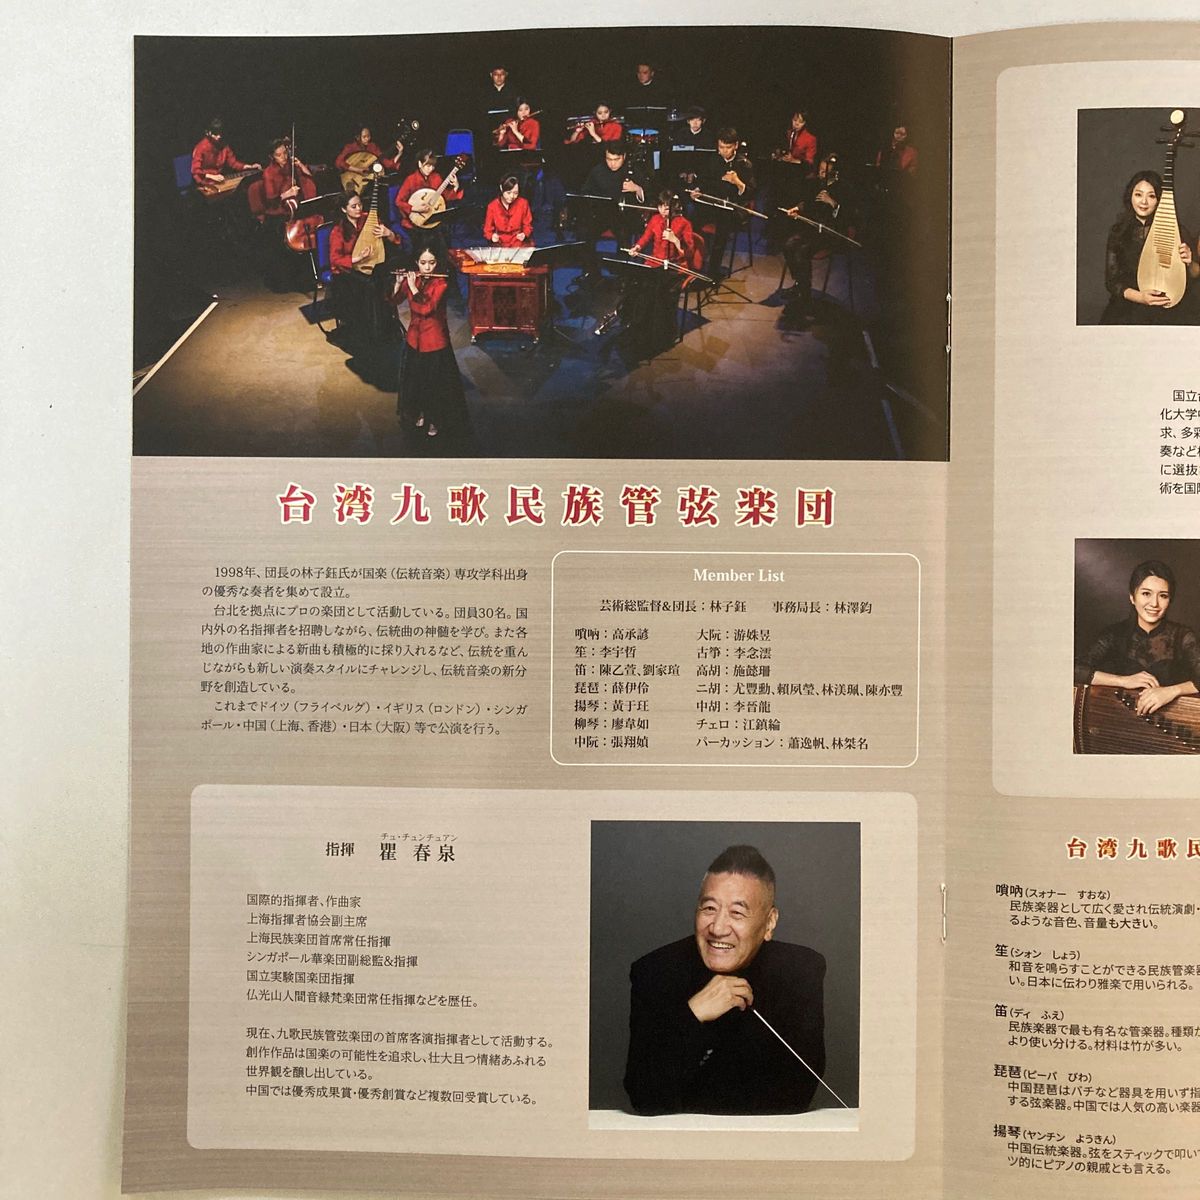 張鶴来日20周年記念&台湾九歌楽団富山公演 パンフレット+チケット